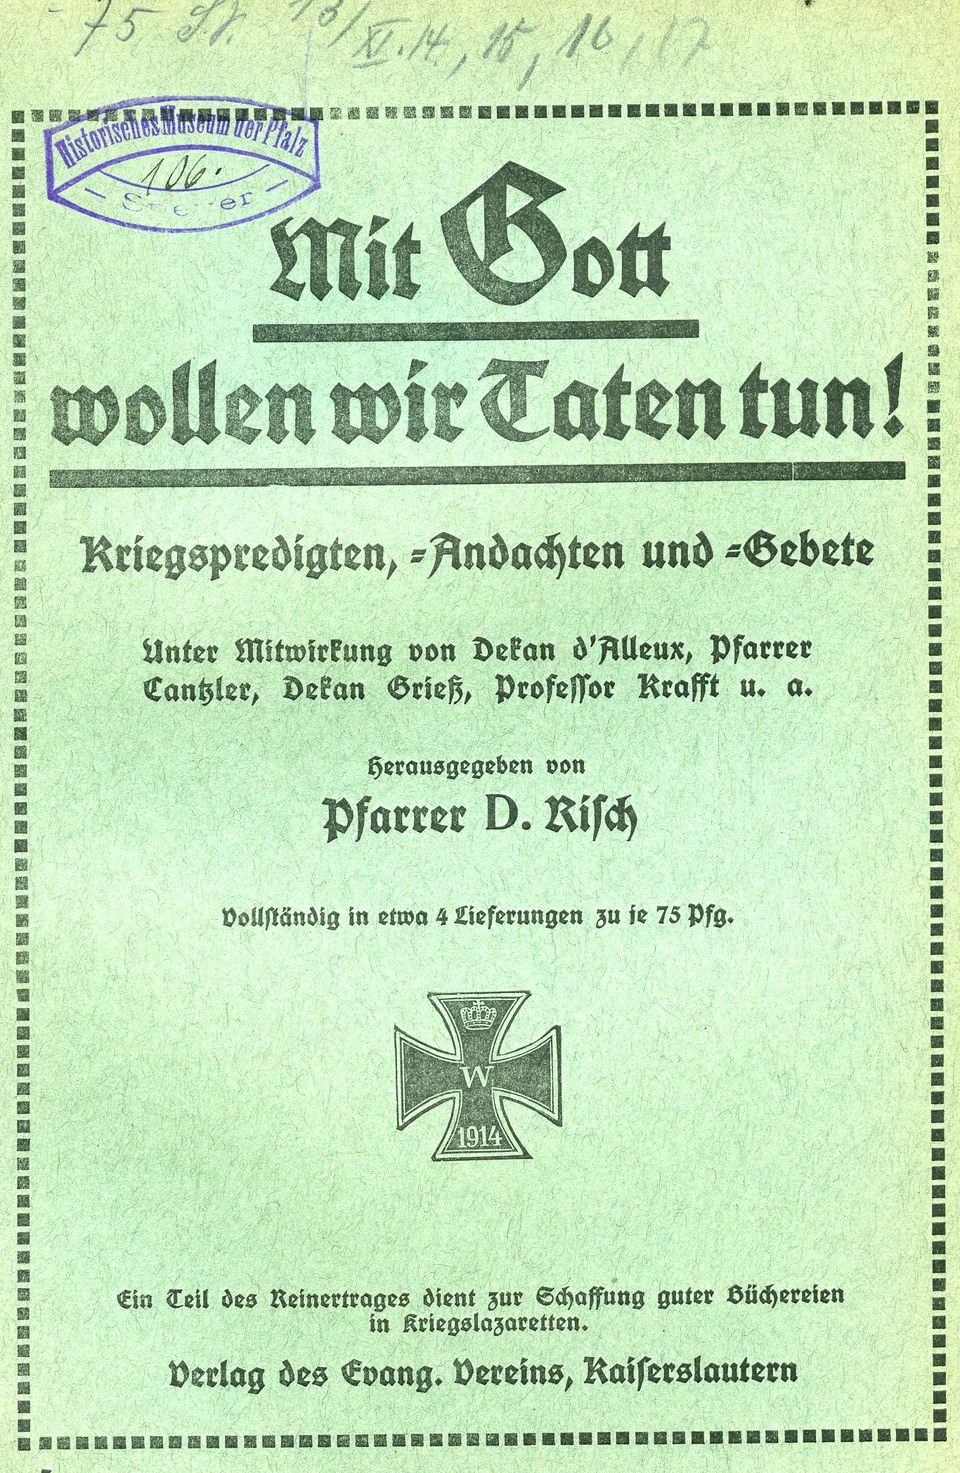 Sammelschrift Kriegspredigten, -andachten und -gebete  (Historisches Museum der Pfalz, Speyer CC BY)